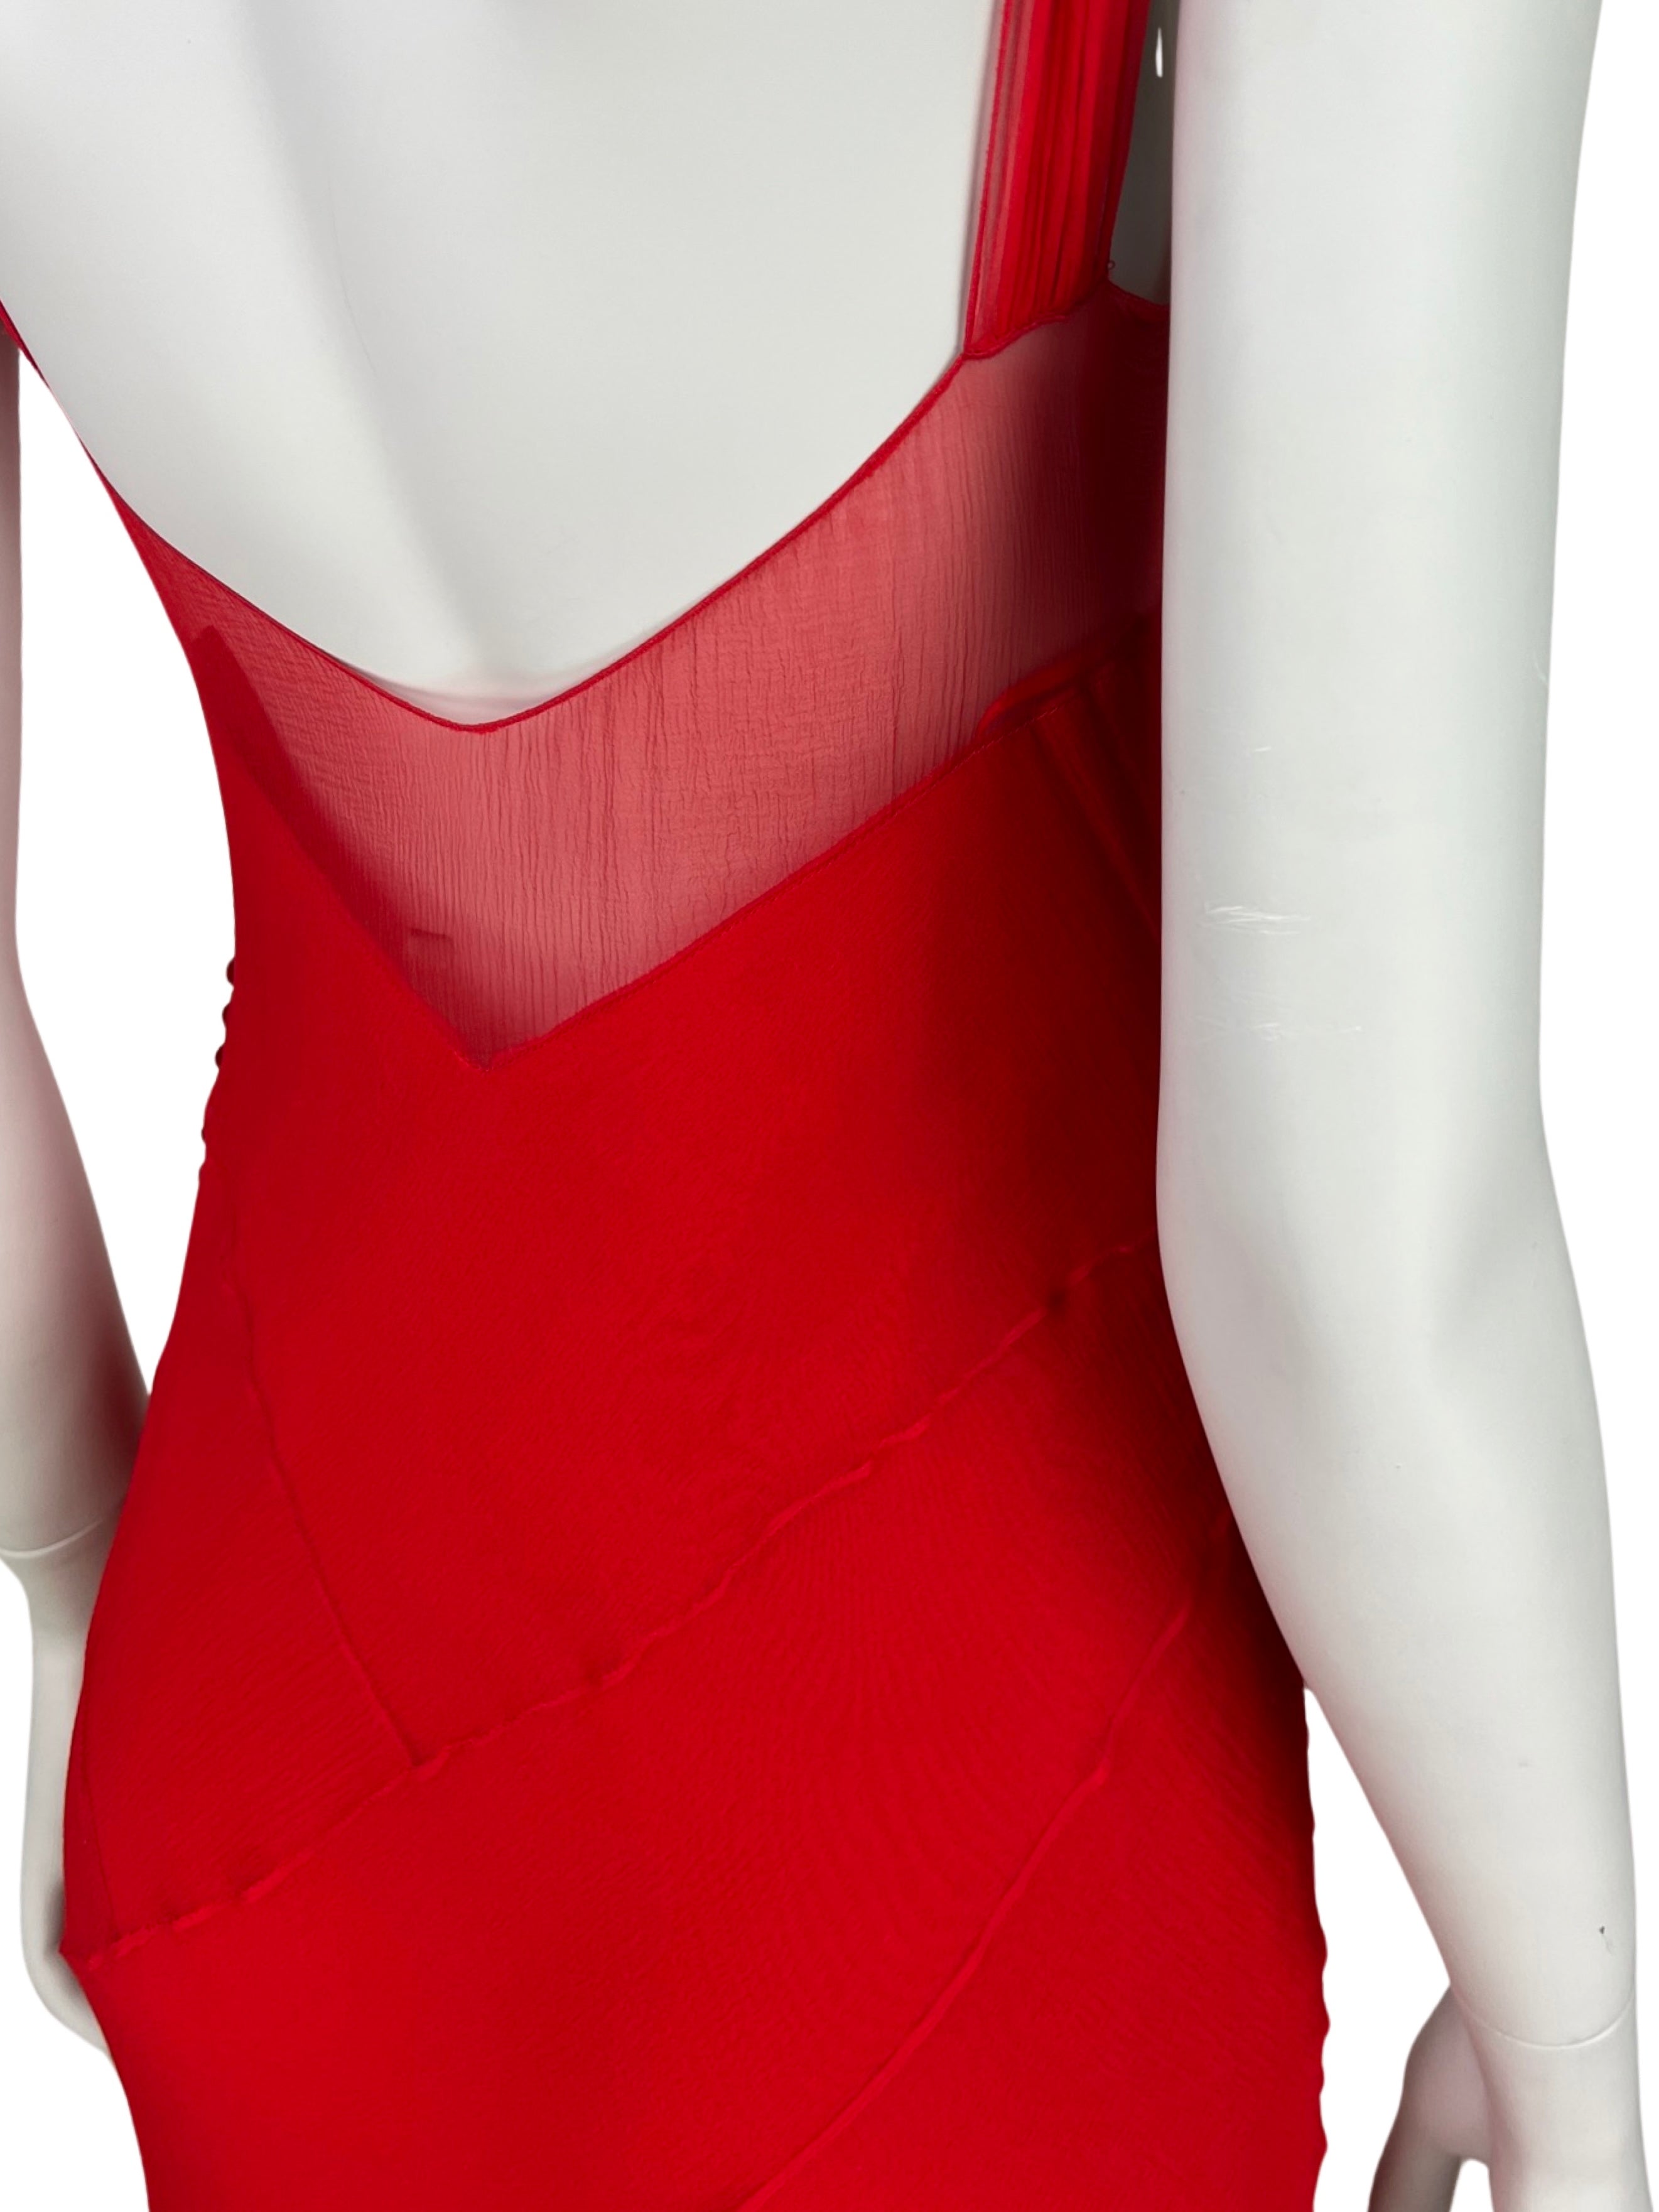 Dior Spring 2004 Red Bias Cut Silk Chiffon Dress